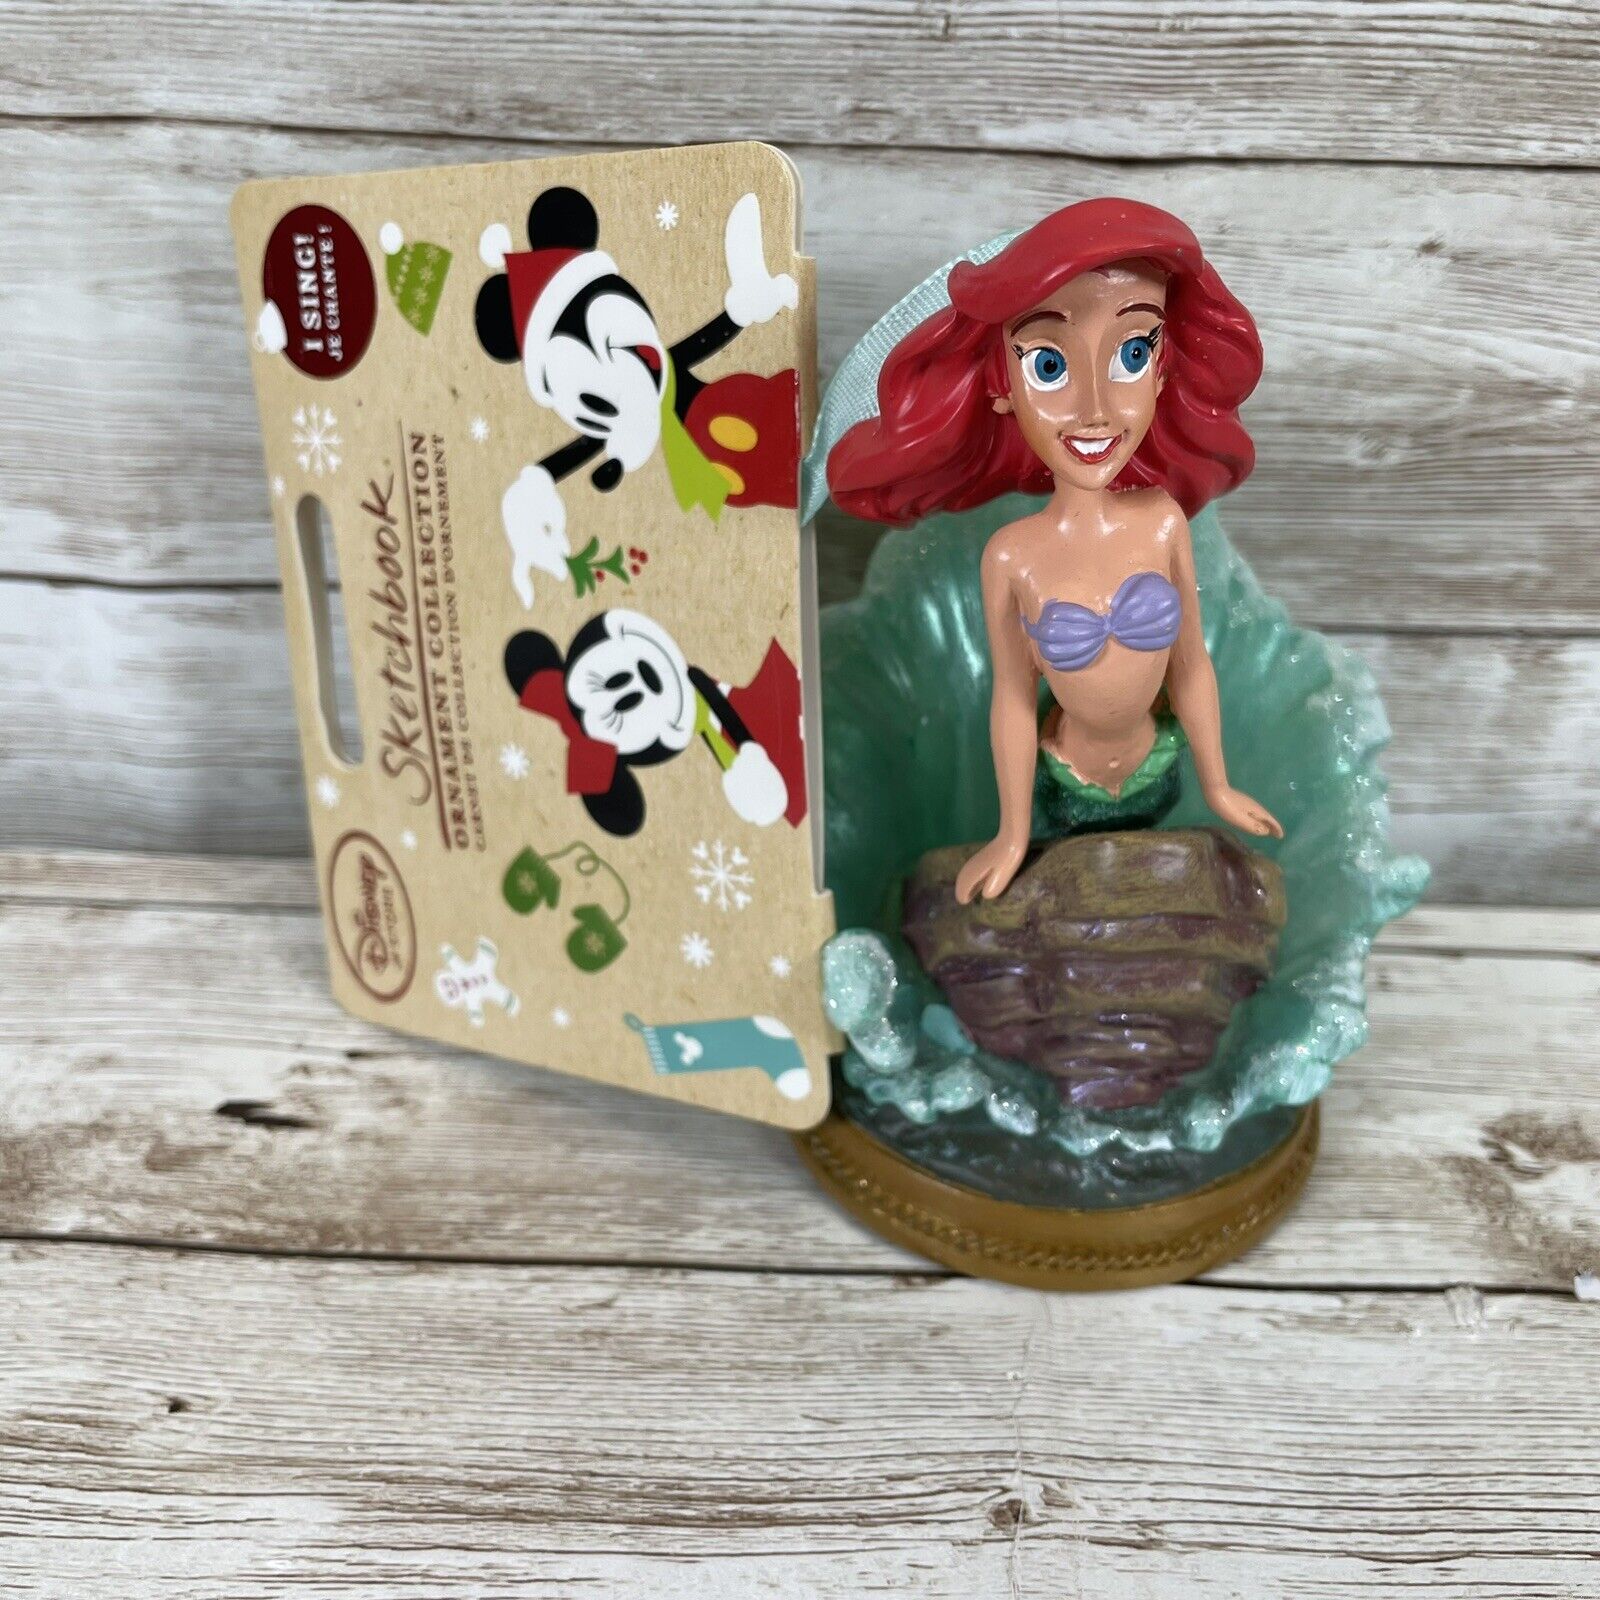 Disney Store 2016 Sketchbook Christmas Ornament Ariel Singing The Little Mermaid